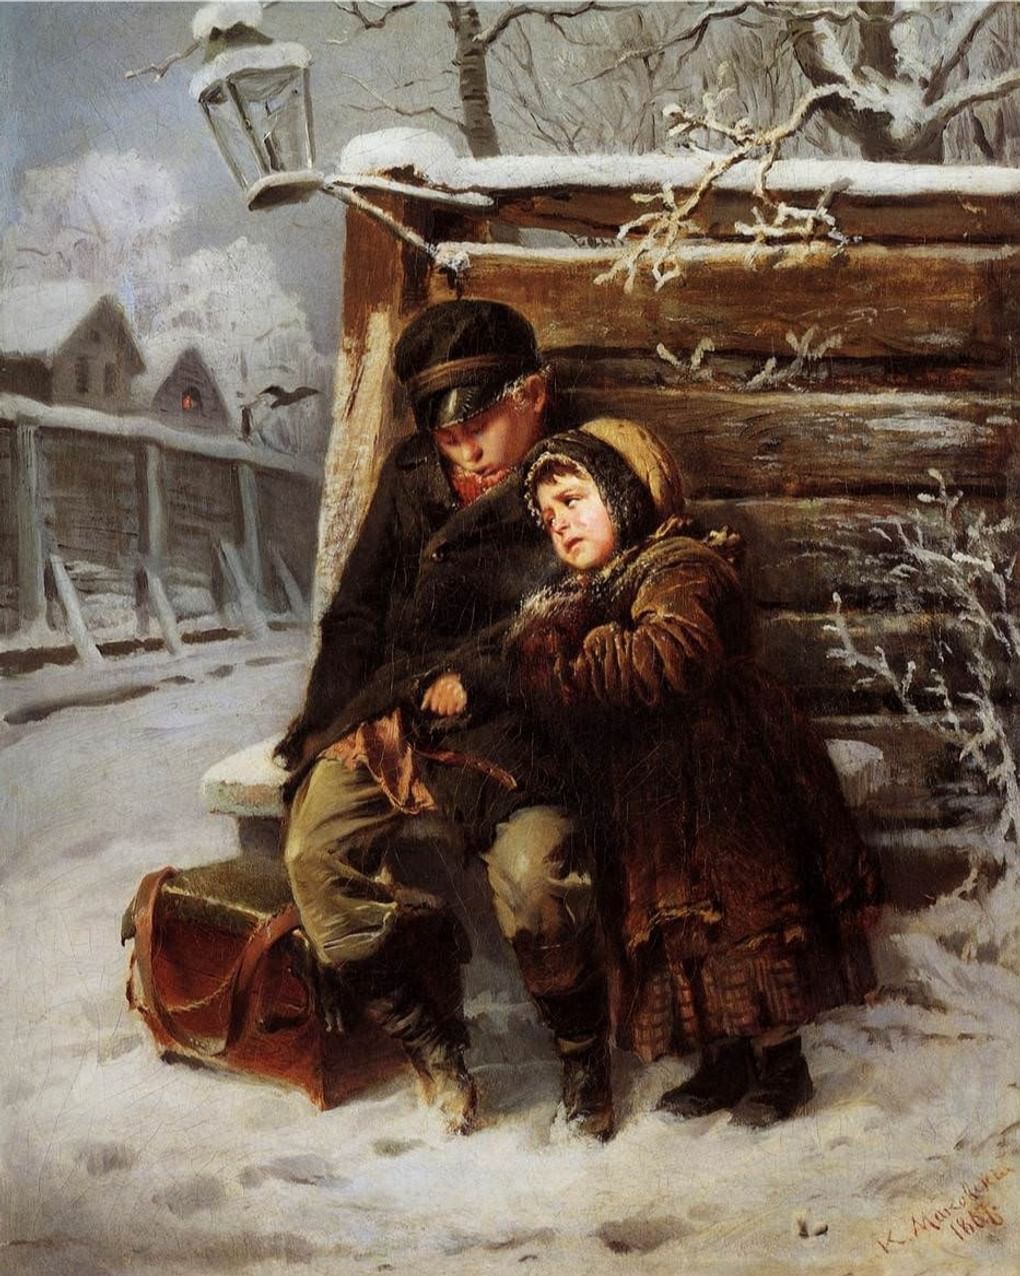 Константин Маковский. Маленькие шарманщики у забора зимой. 1868. Частное собрание